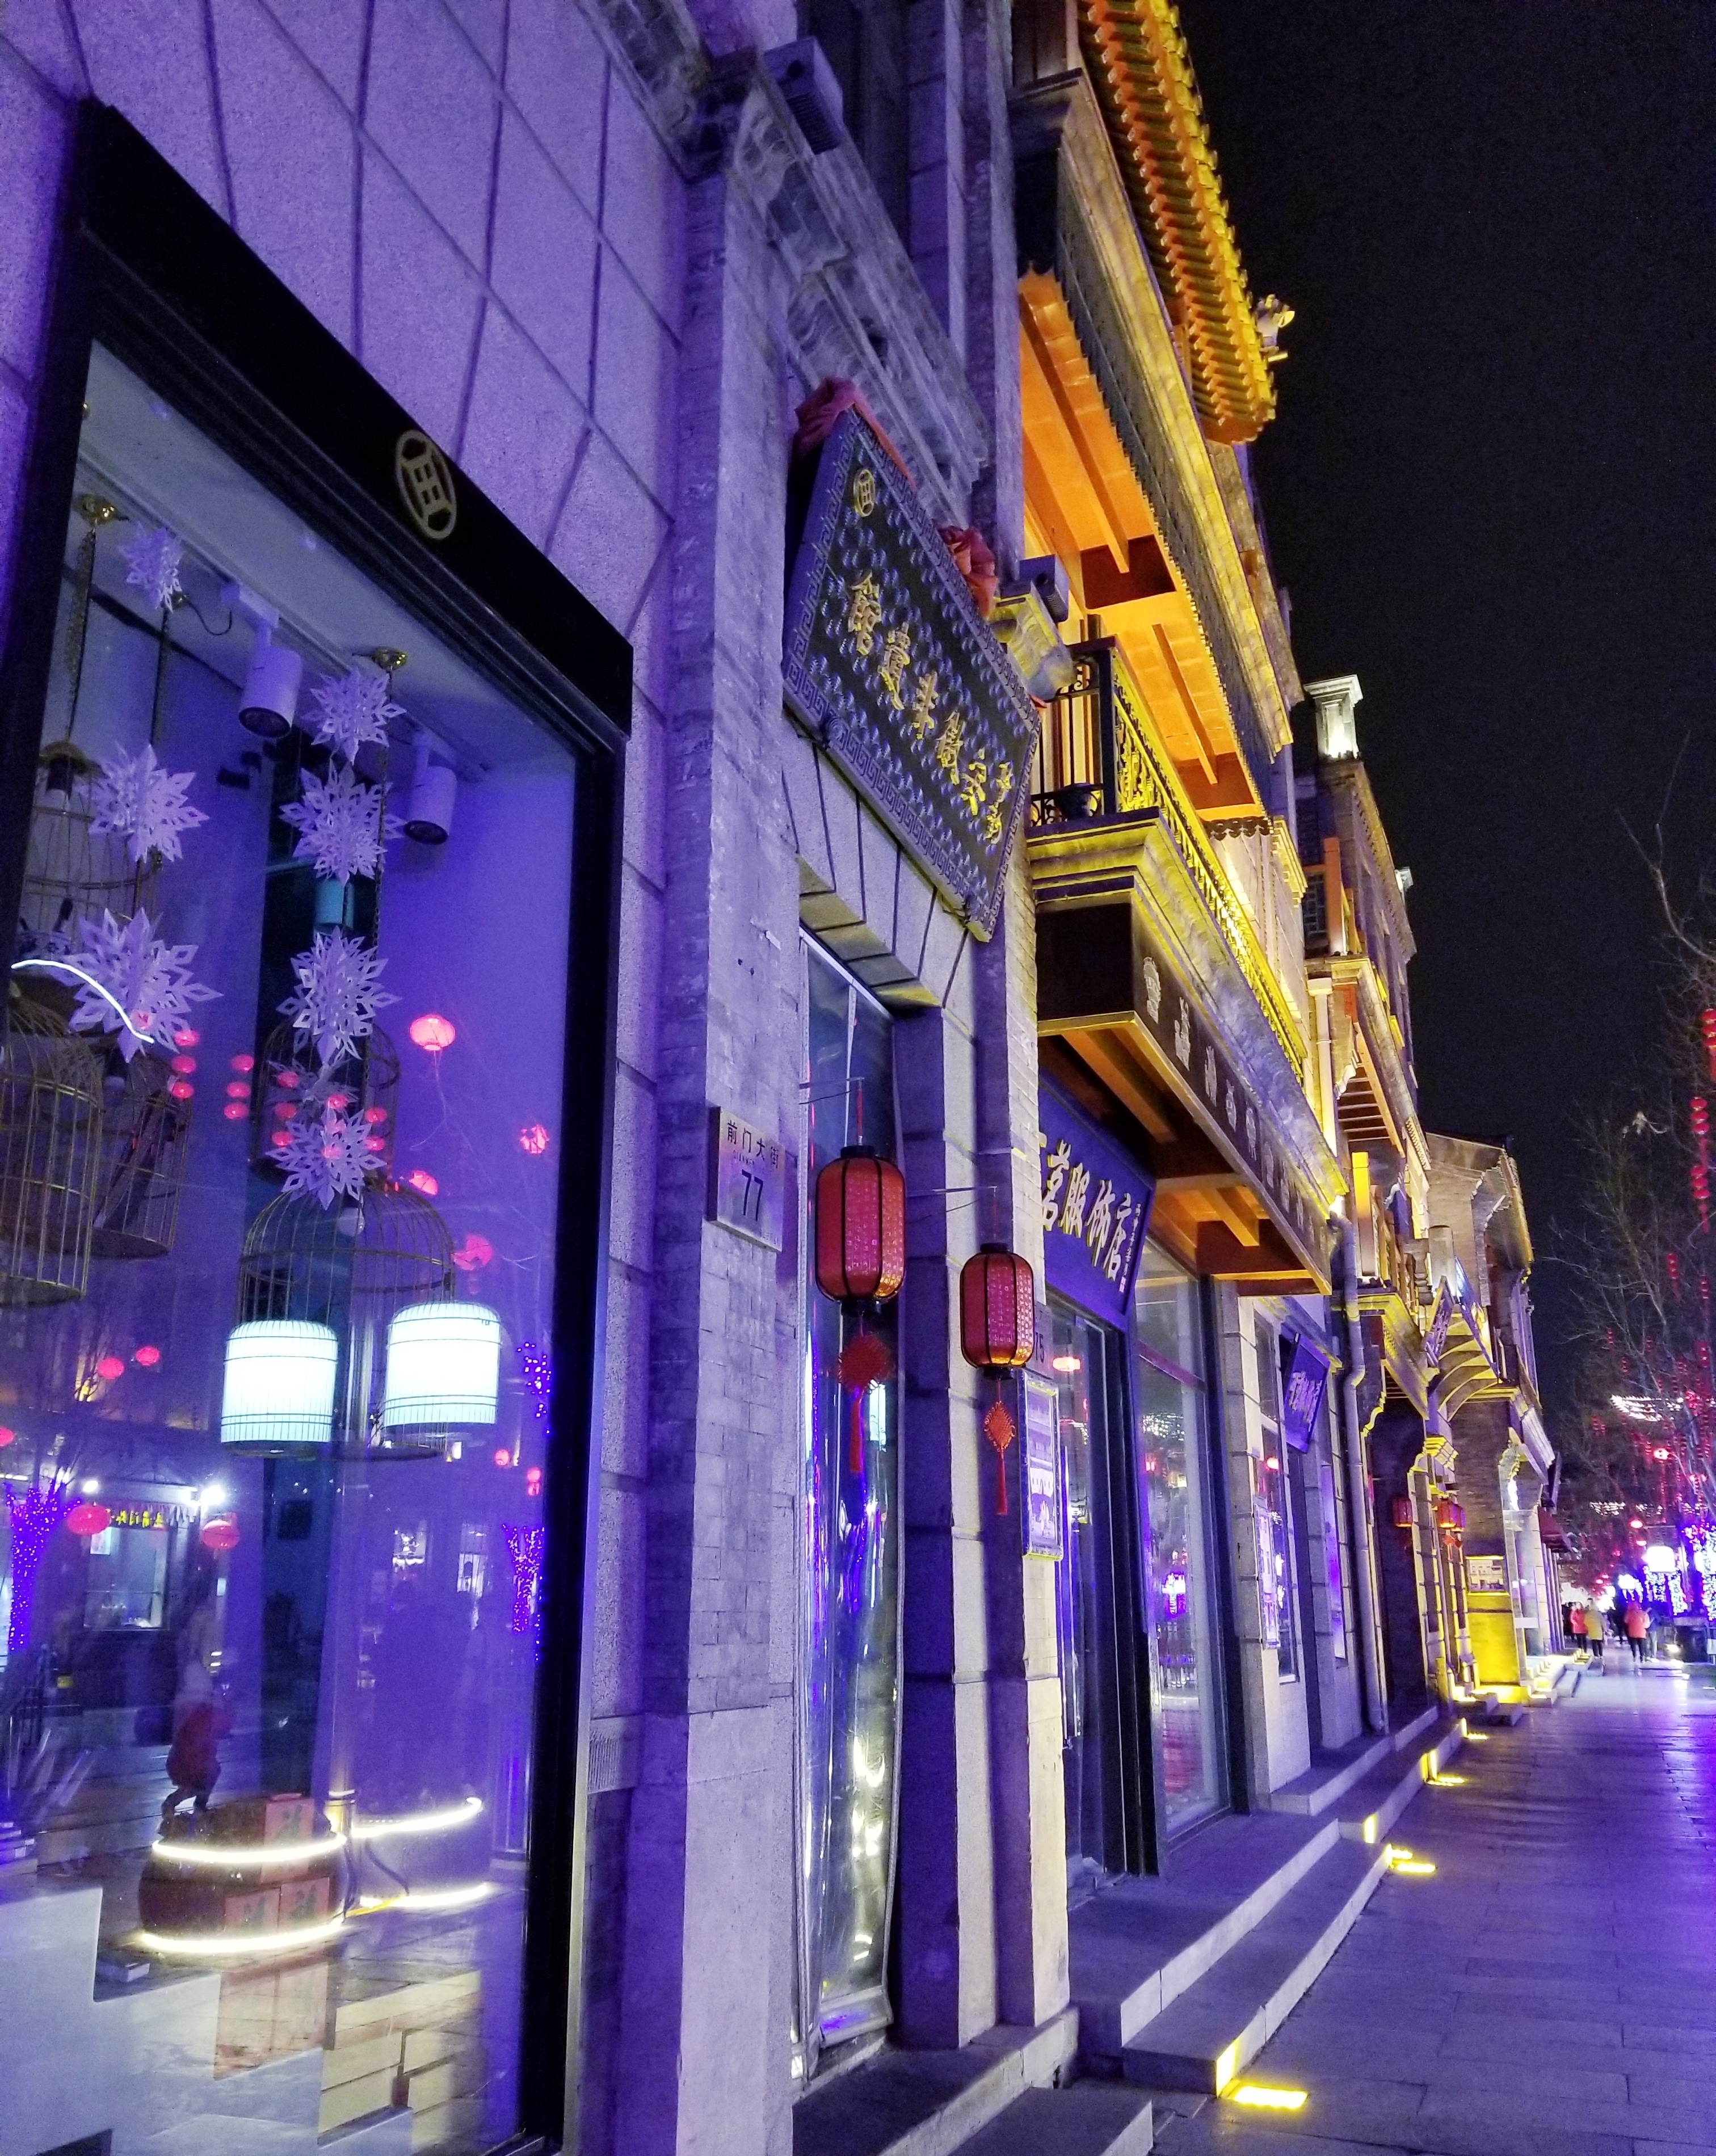 2019年春节假期的北京前门大街地区:灯火璀璨,繁华不亚于平时